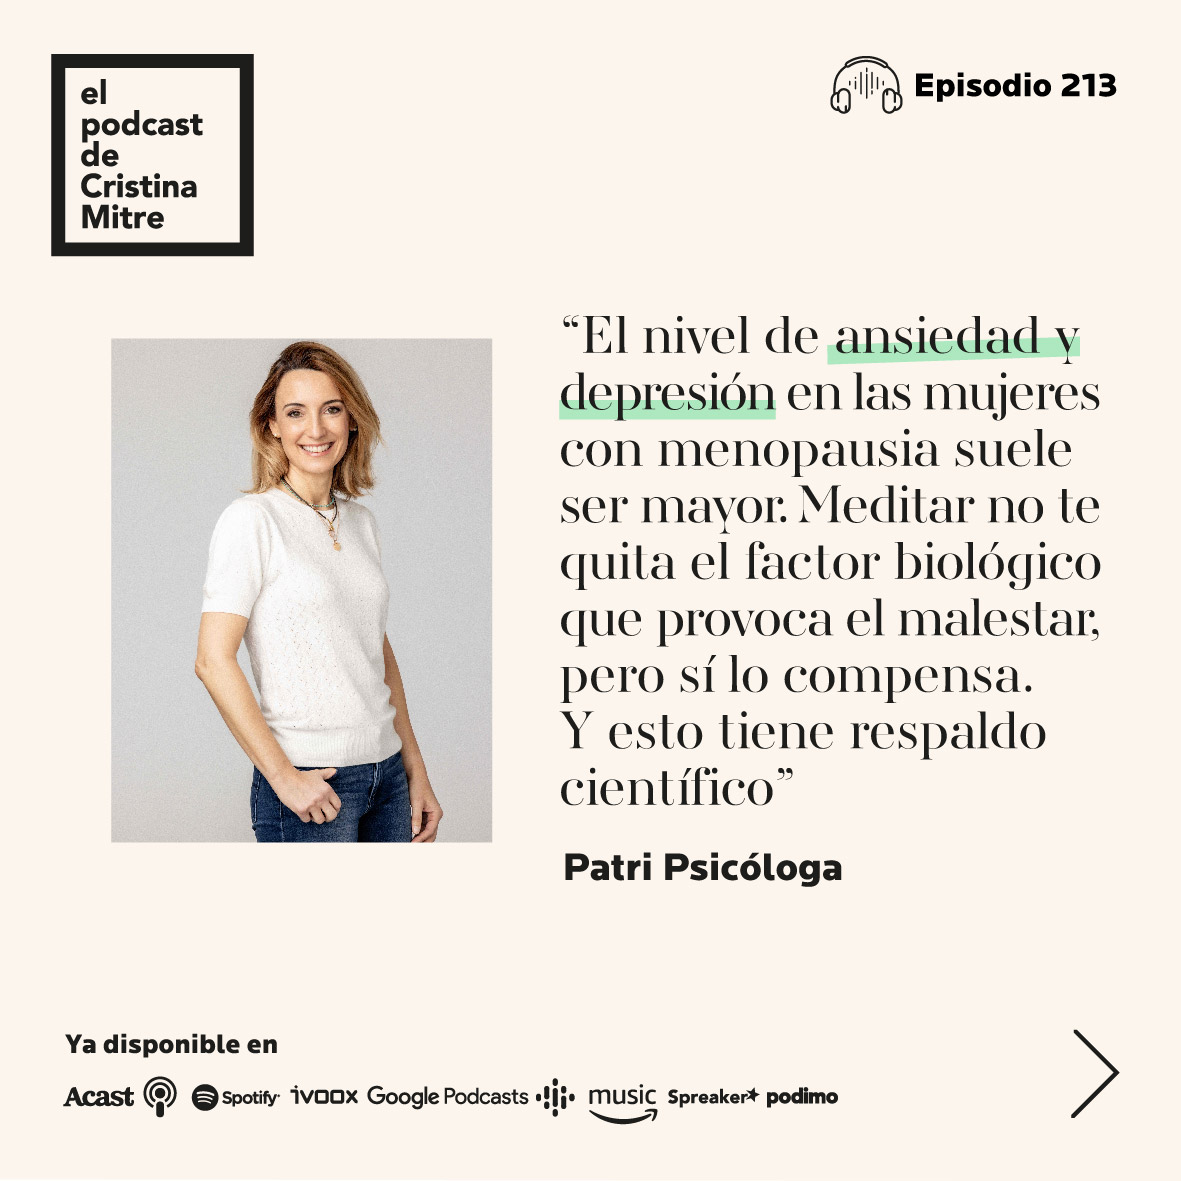 El podcast de Cristina Mitre Menopausia